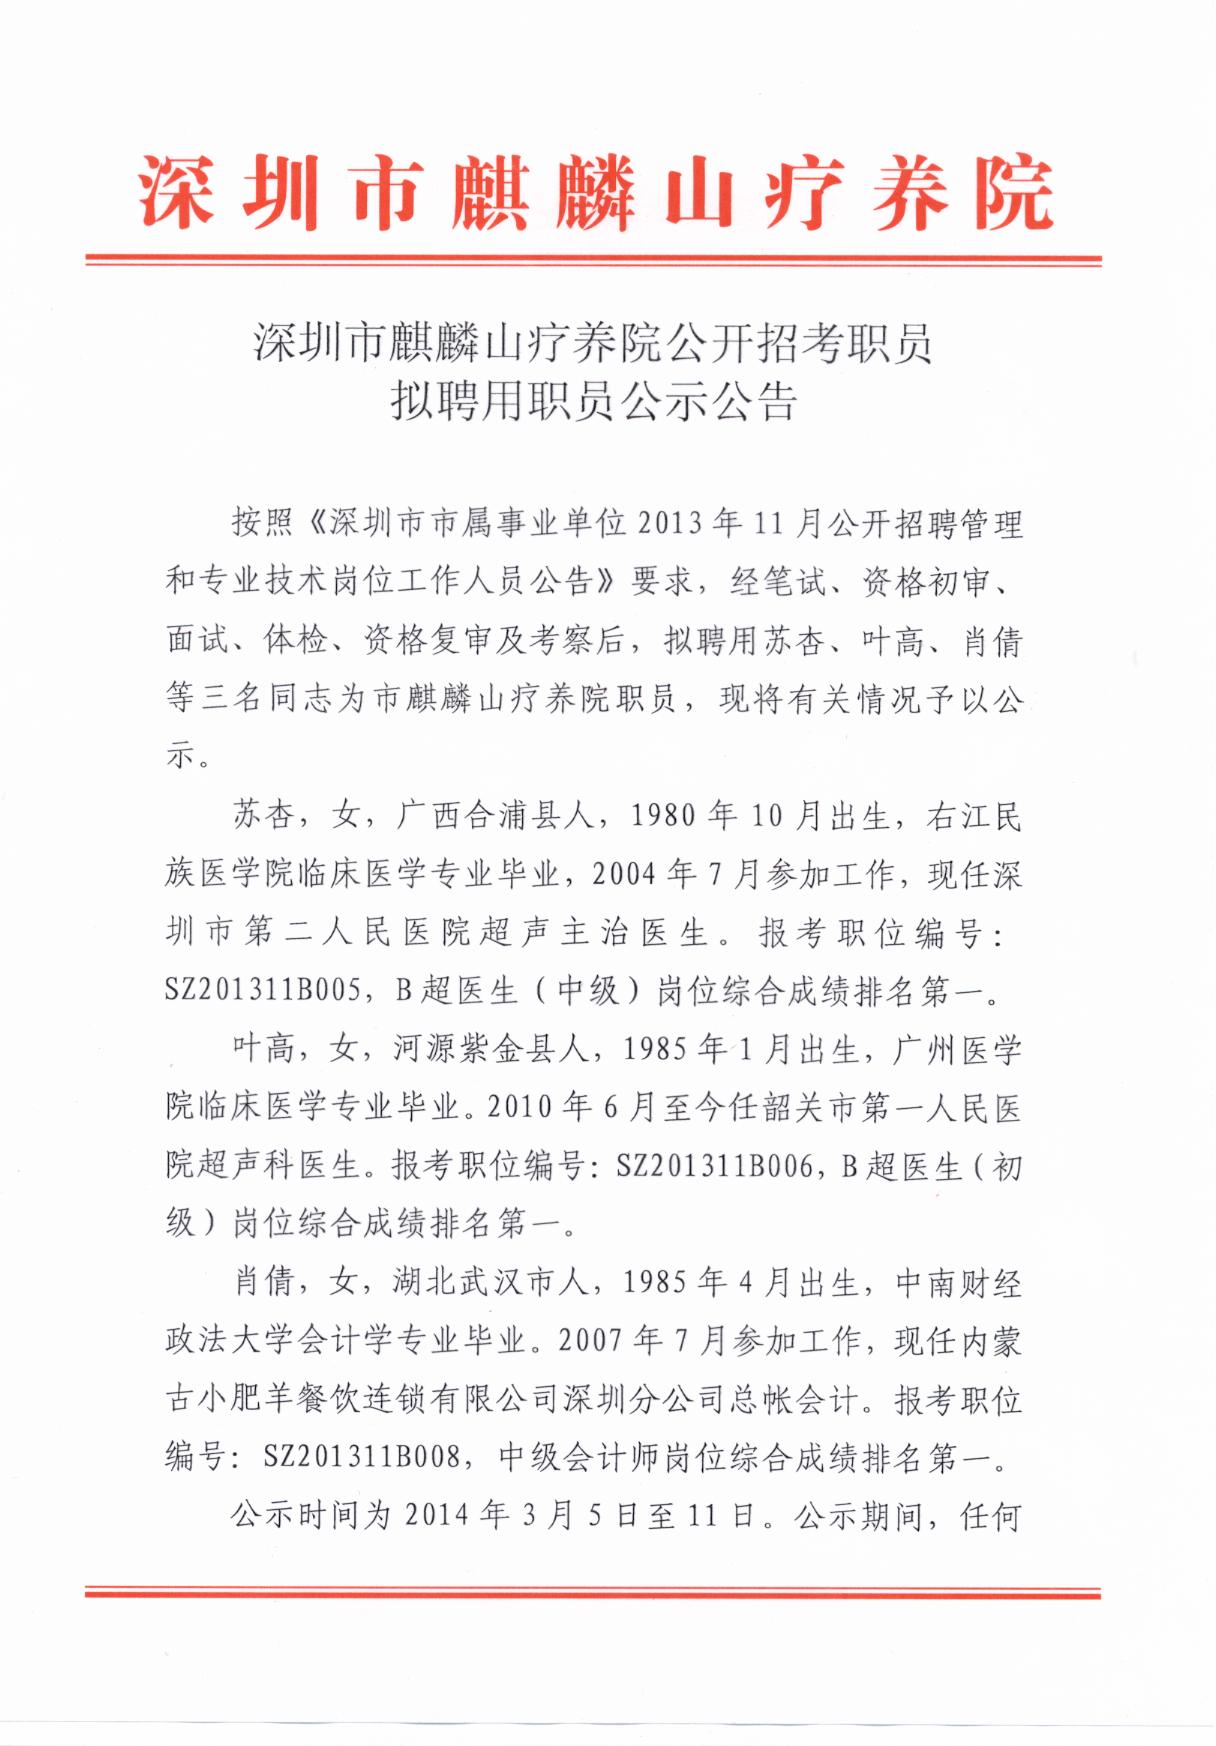 深圳市麒麟山疗养院公开招考职员拟聘用职员公示公告